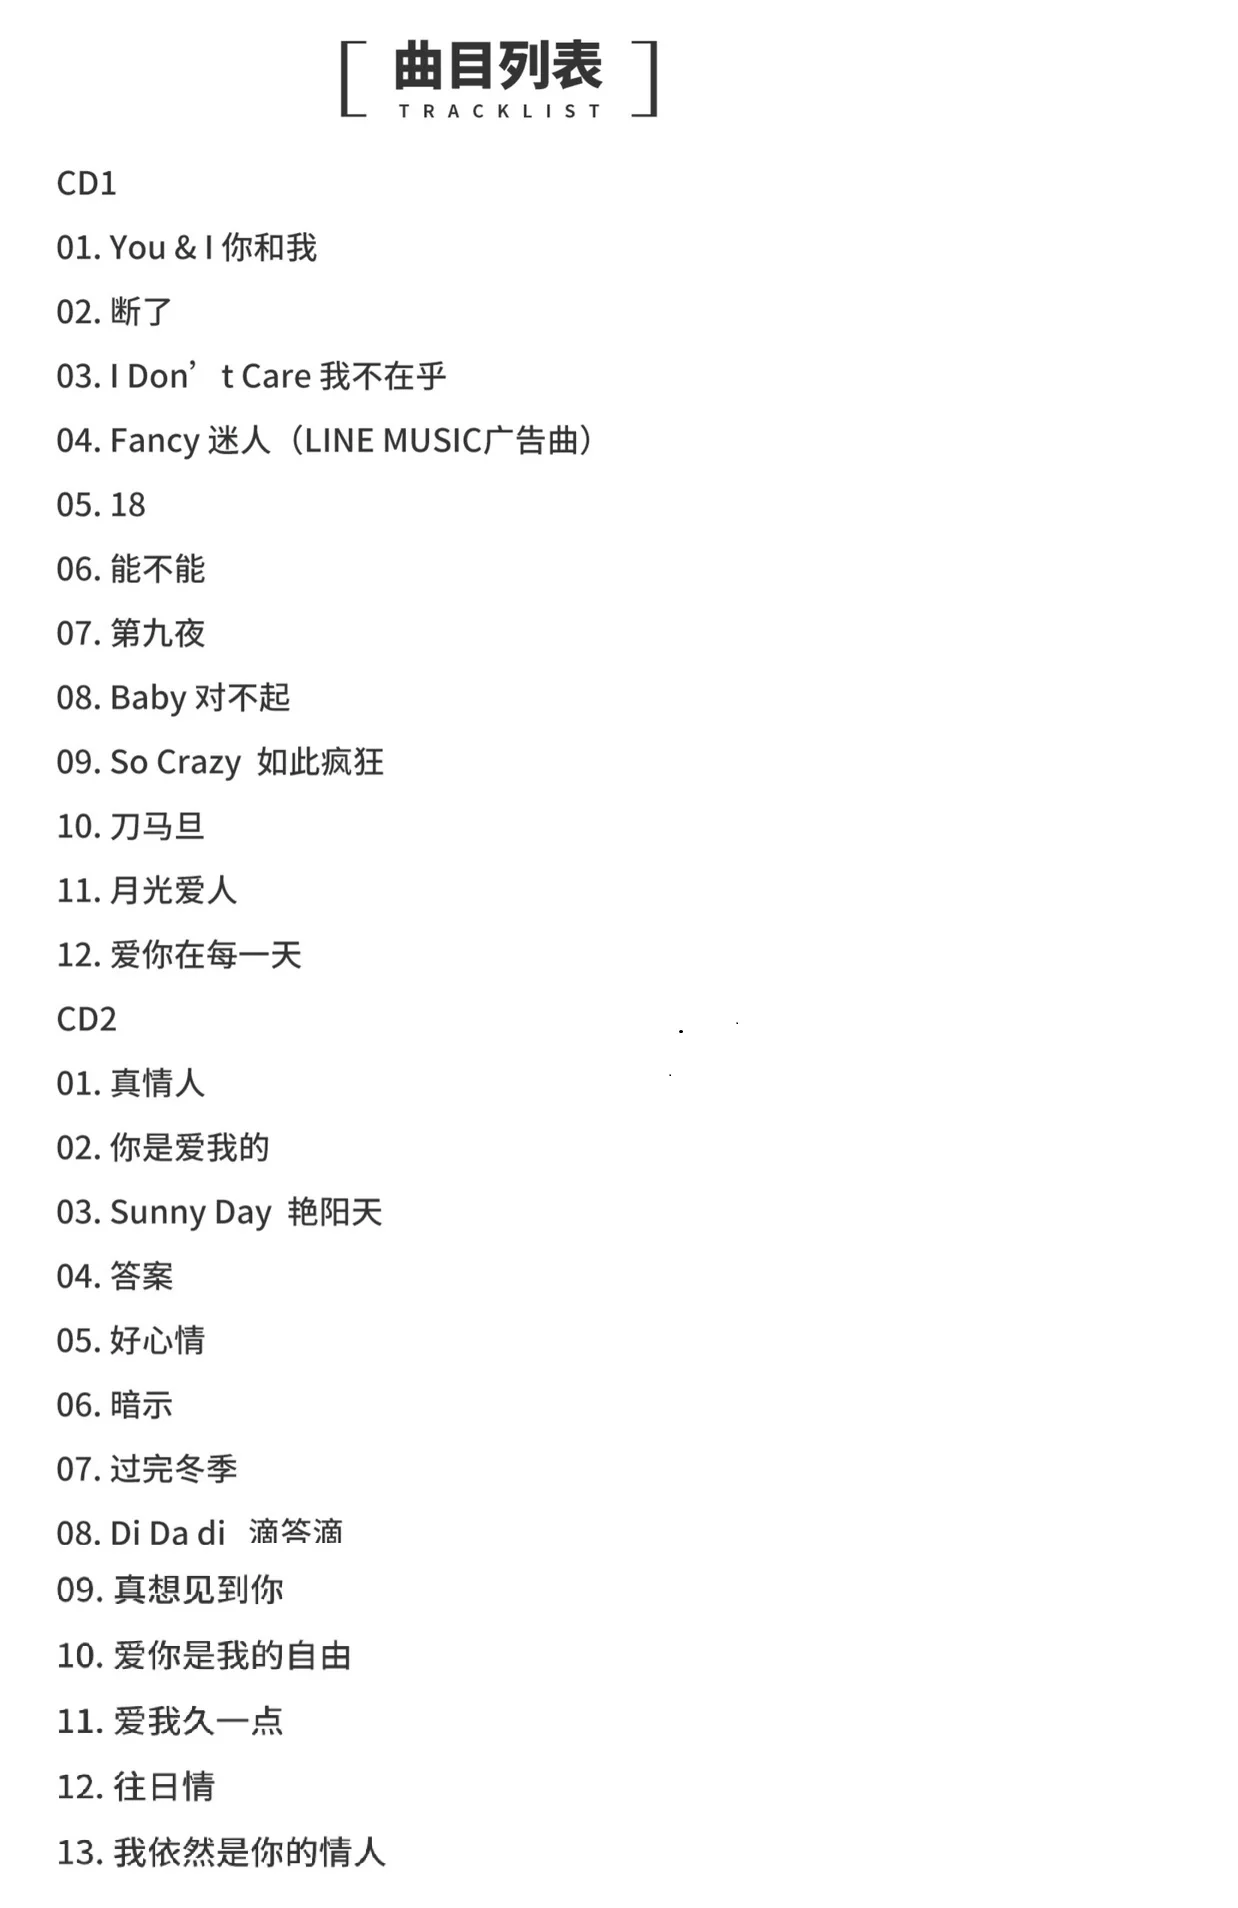 Азия Китайский Официальный Оригинальный Бокс-сет на 2 CD-диска Поп-музыки Китайской певицы Ли Вэнь Коко Ли с альбомом из 25 песен в 2019 году